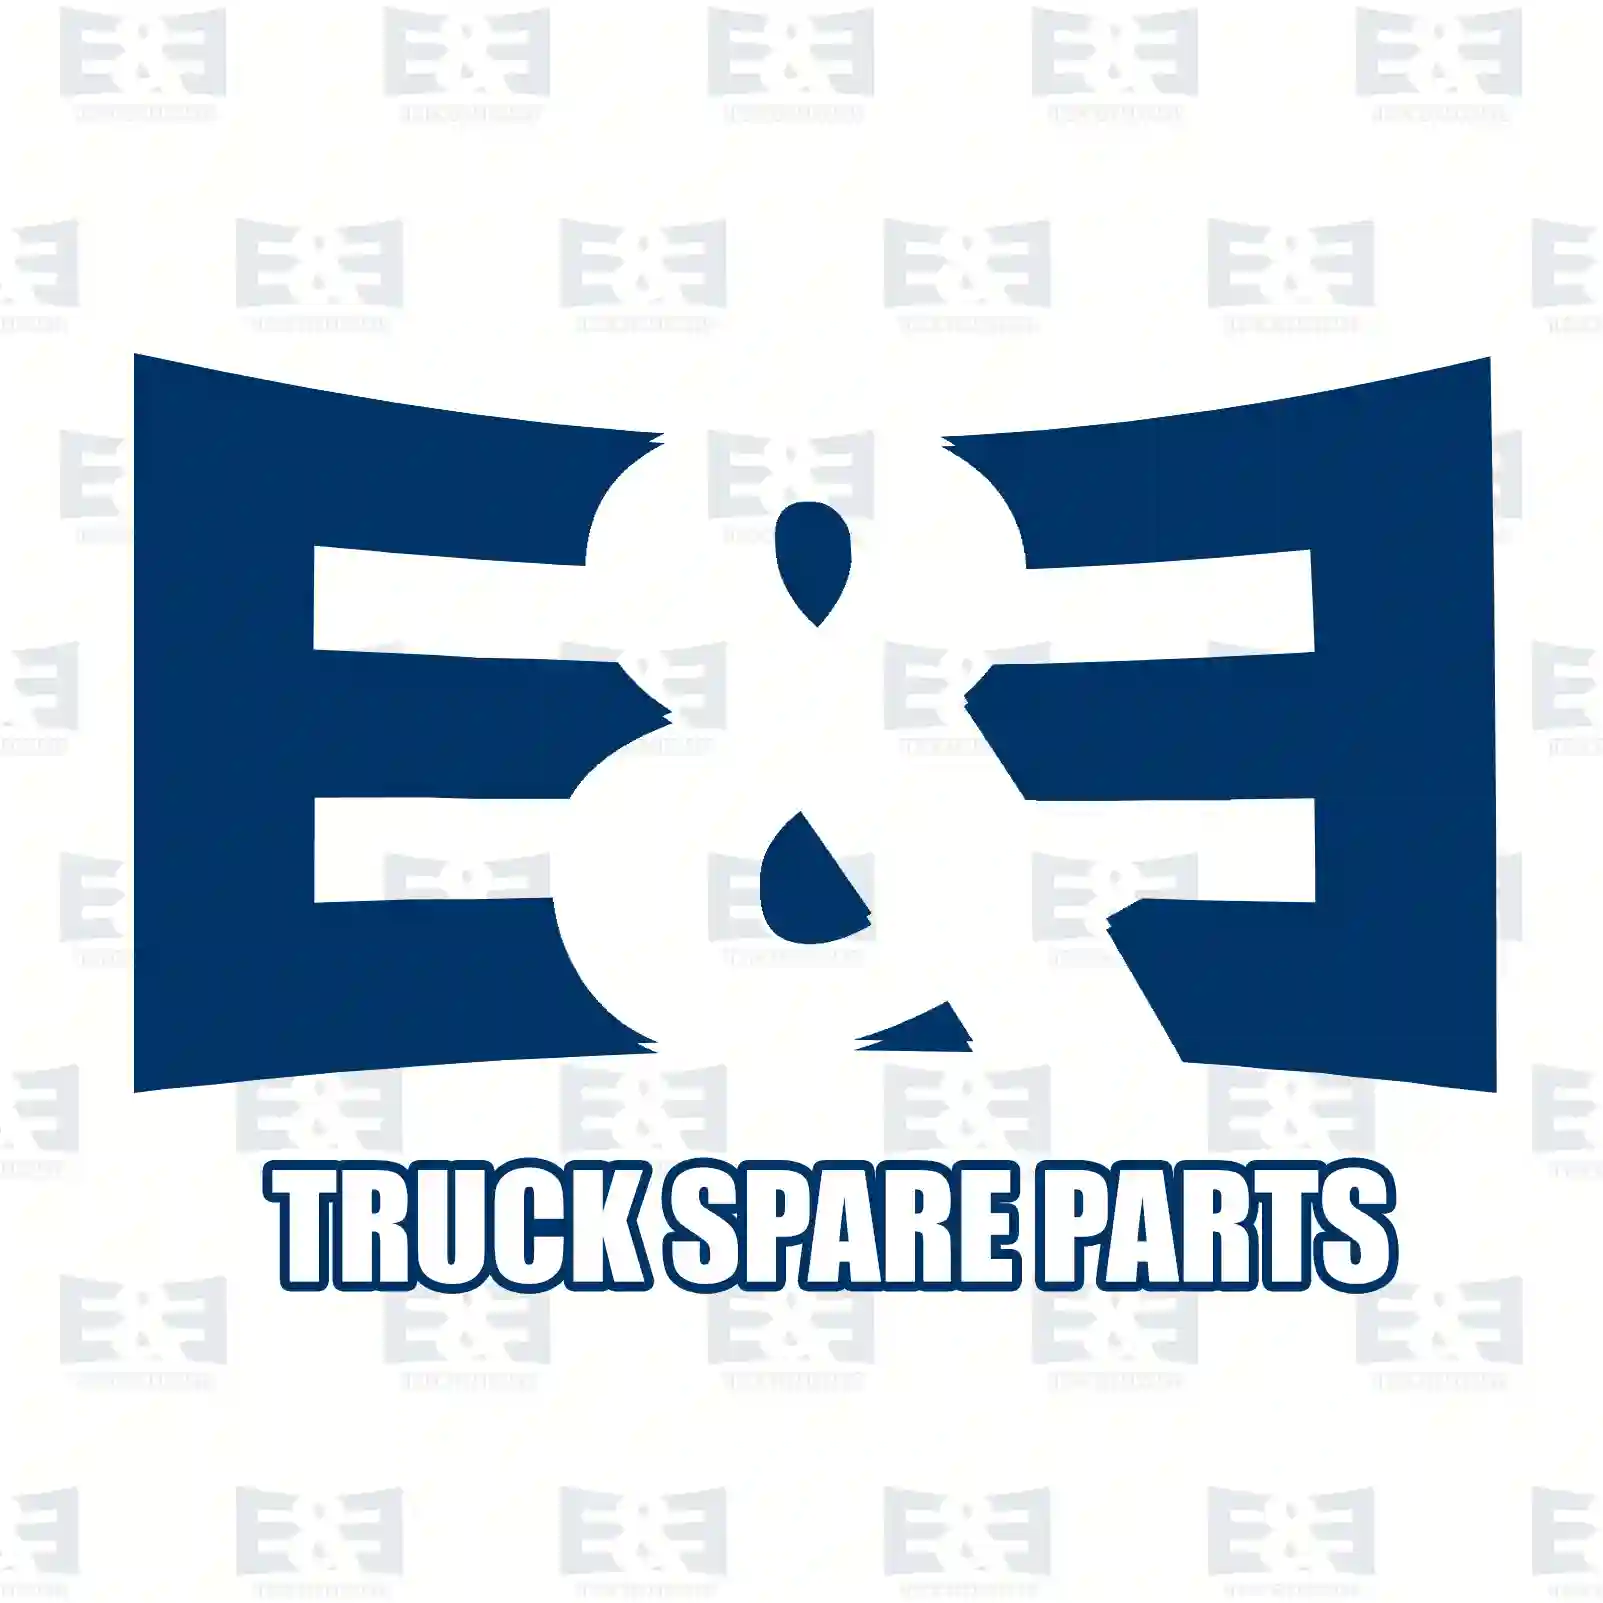 Cover, bumper, 2E2292808, 81416140012, 81416140041, 2V5807061 ||  2E2292808 E&E Truck Spare Parts | Truck Spare Parts, Auotomotive Spare Parts Cover, bumper, 2E2292808, 81416140012, 81416140041, 2V5807061 ||  2E2292808 E&E Truck Spare Parts | Truck Spare Parts, Auotomotive Spare Parts